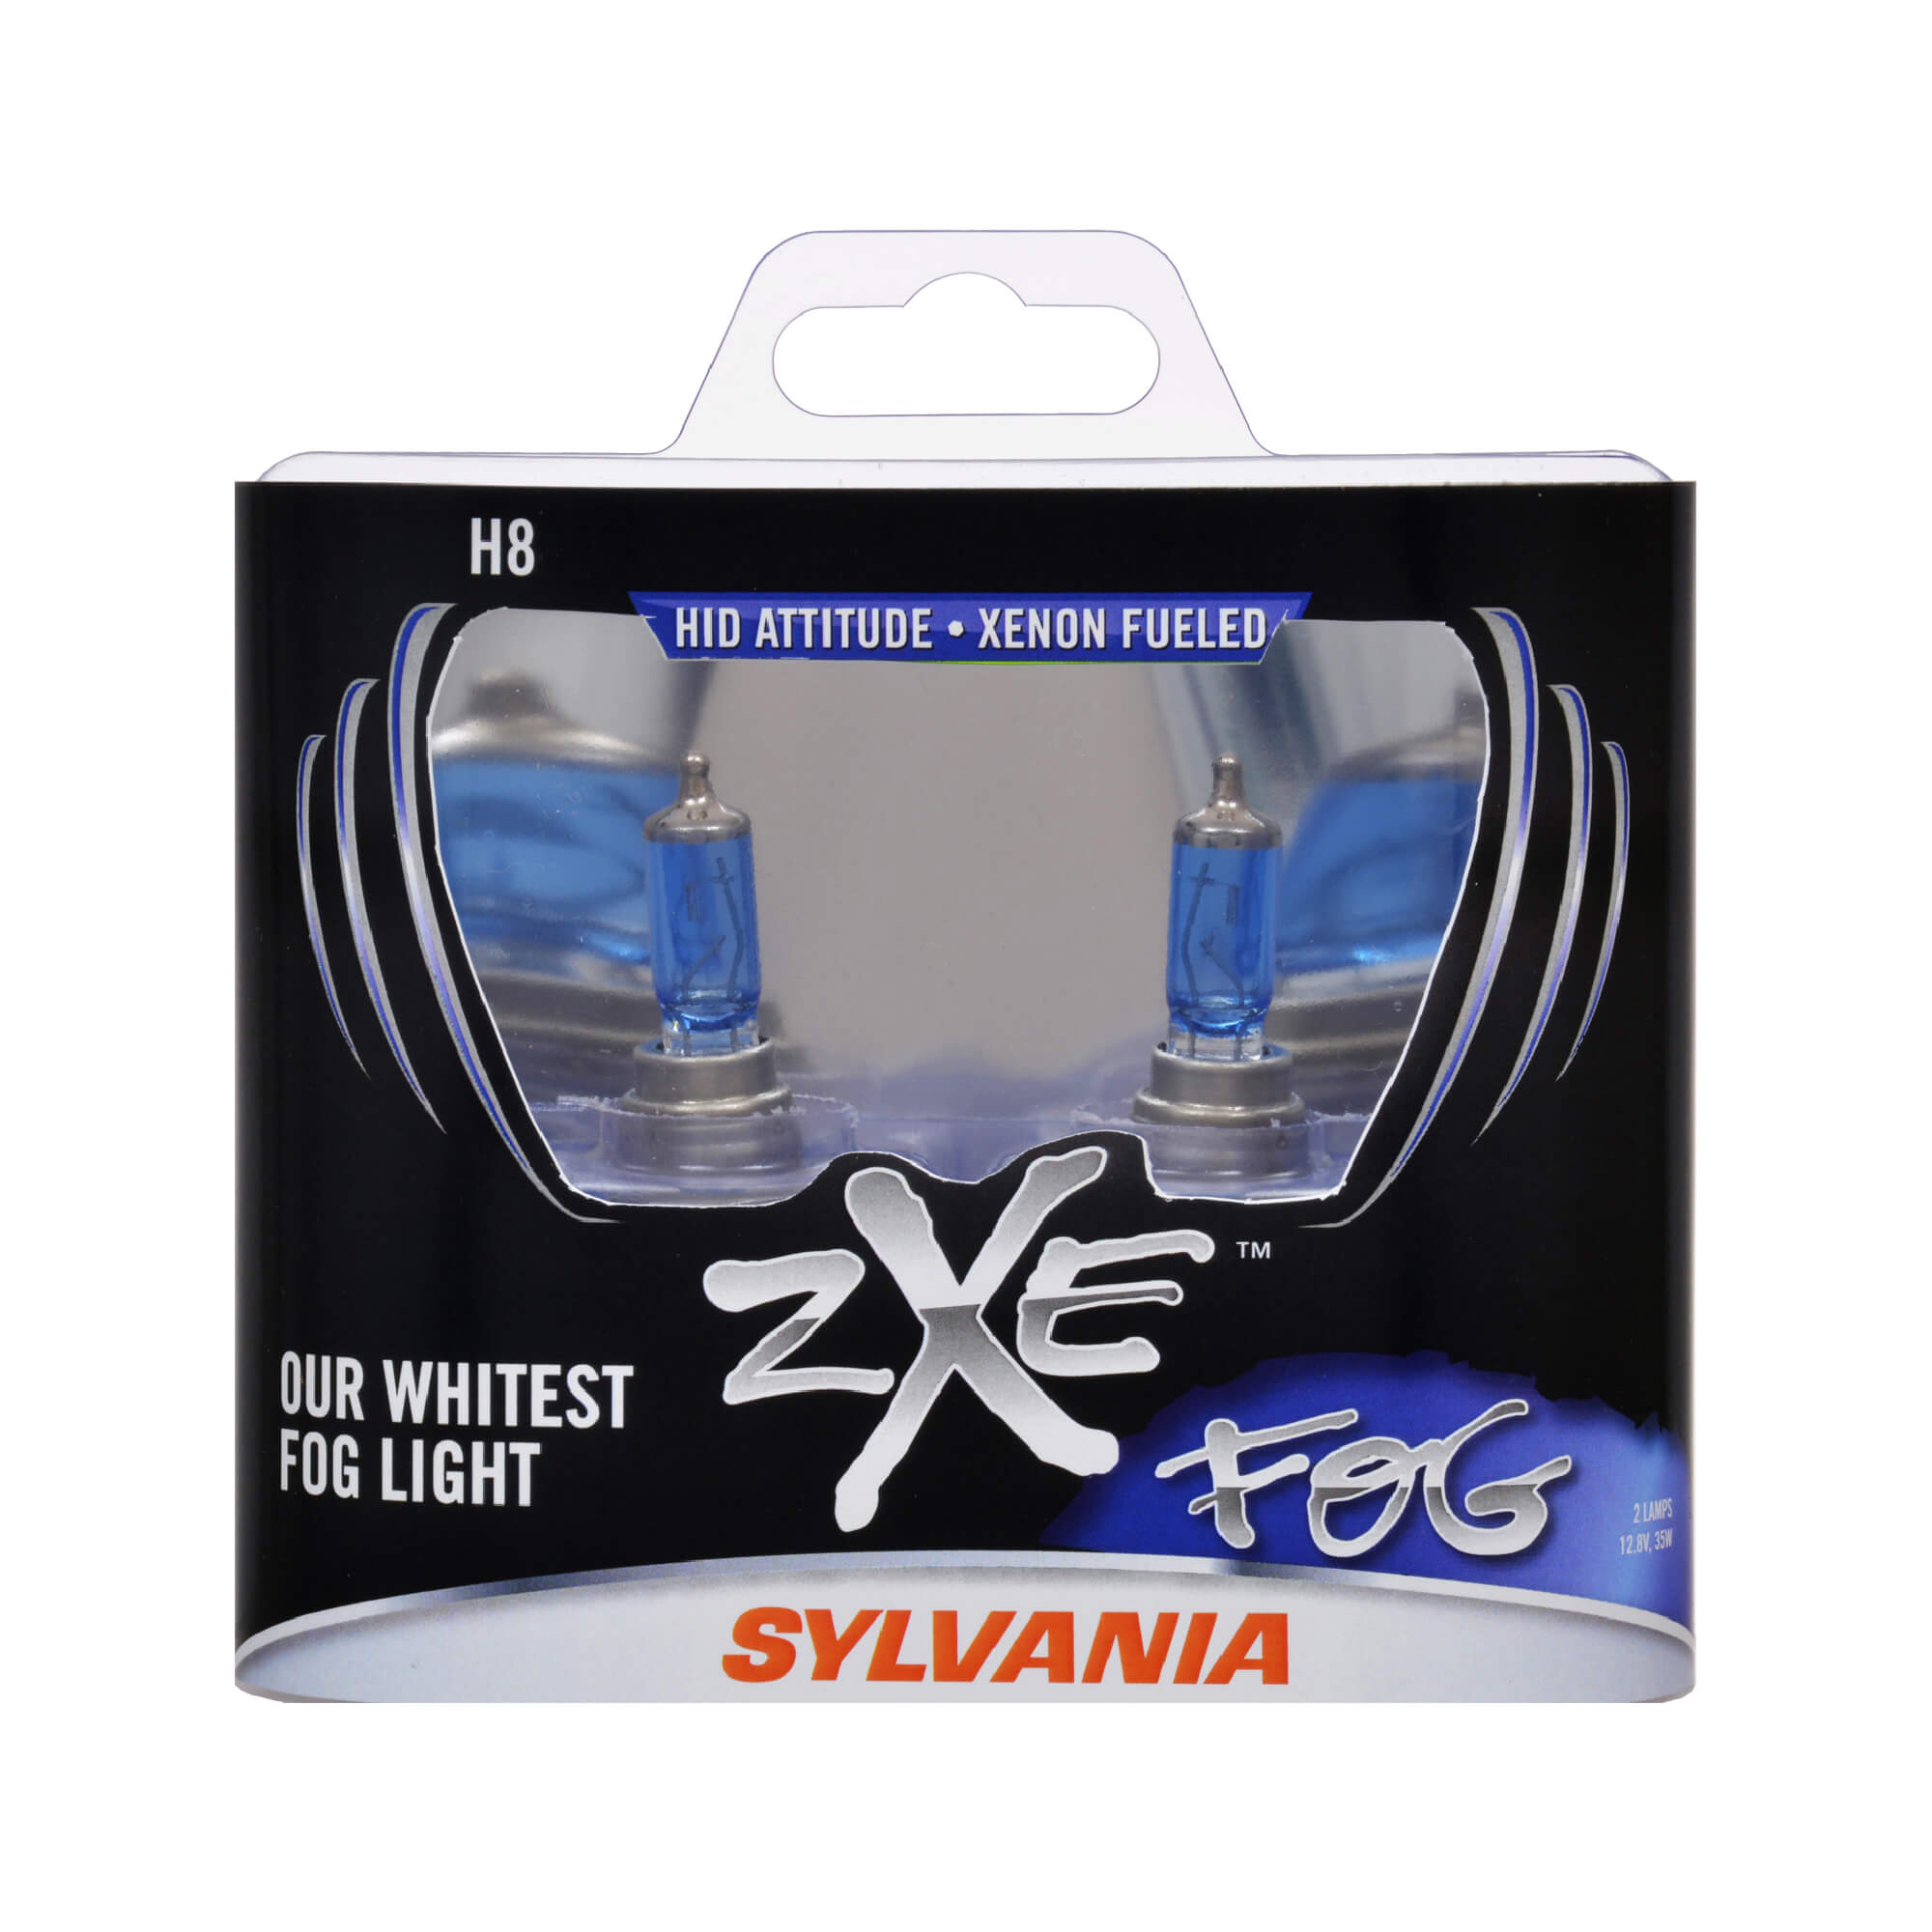 Contains 1 Bulb SYLVANIA H8 SilverStar Fog Light Bulb H8ST.BP 